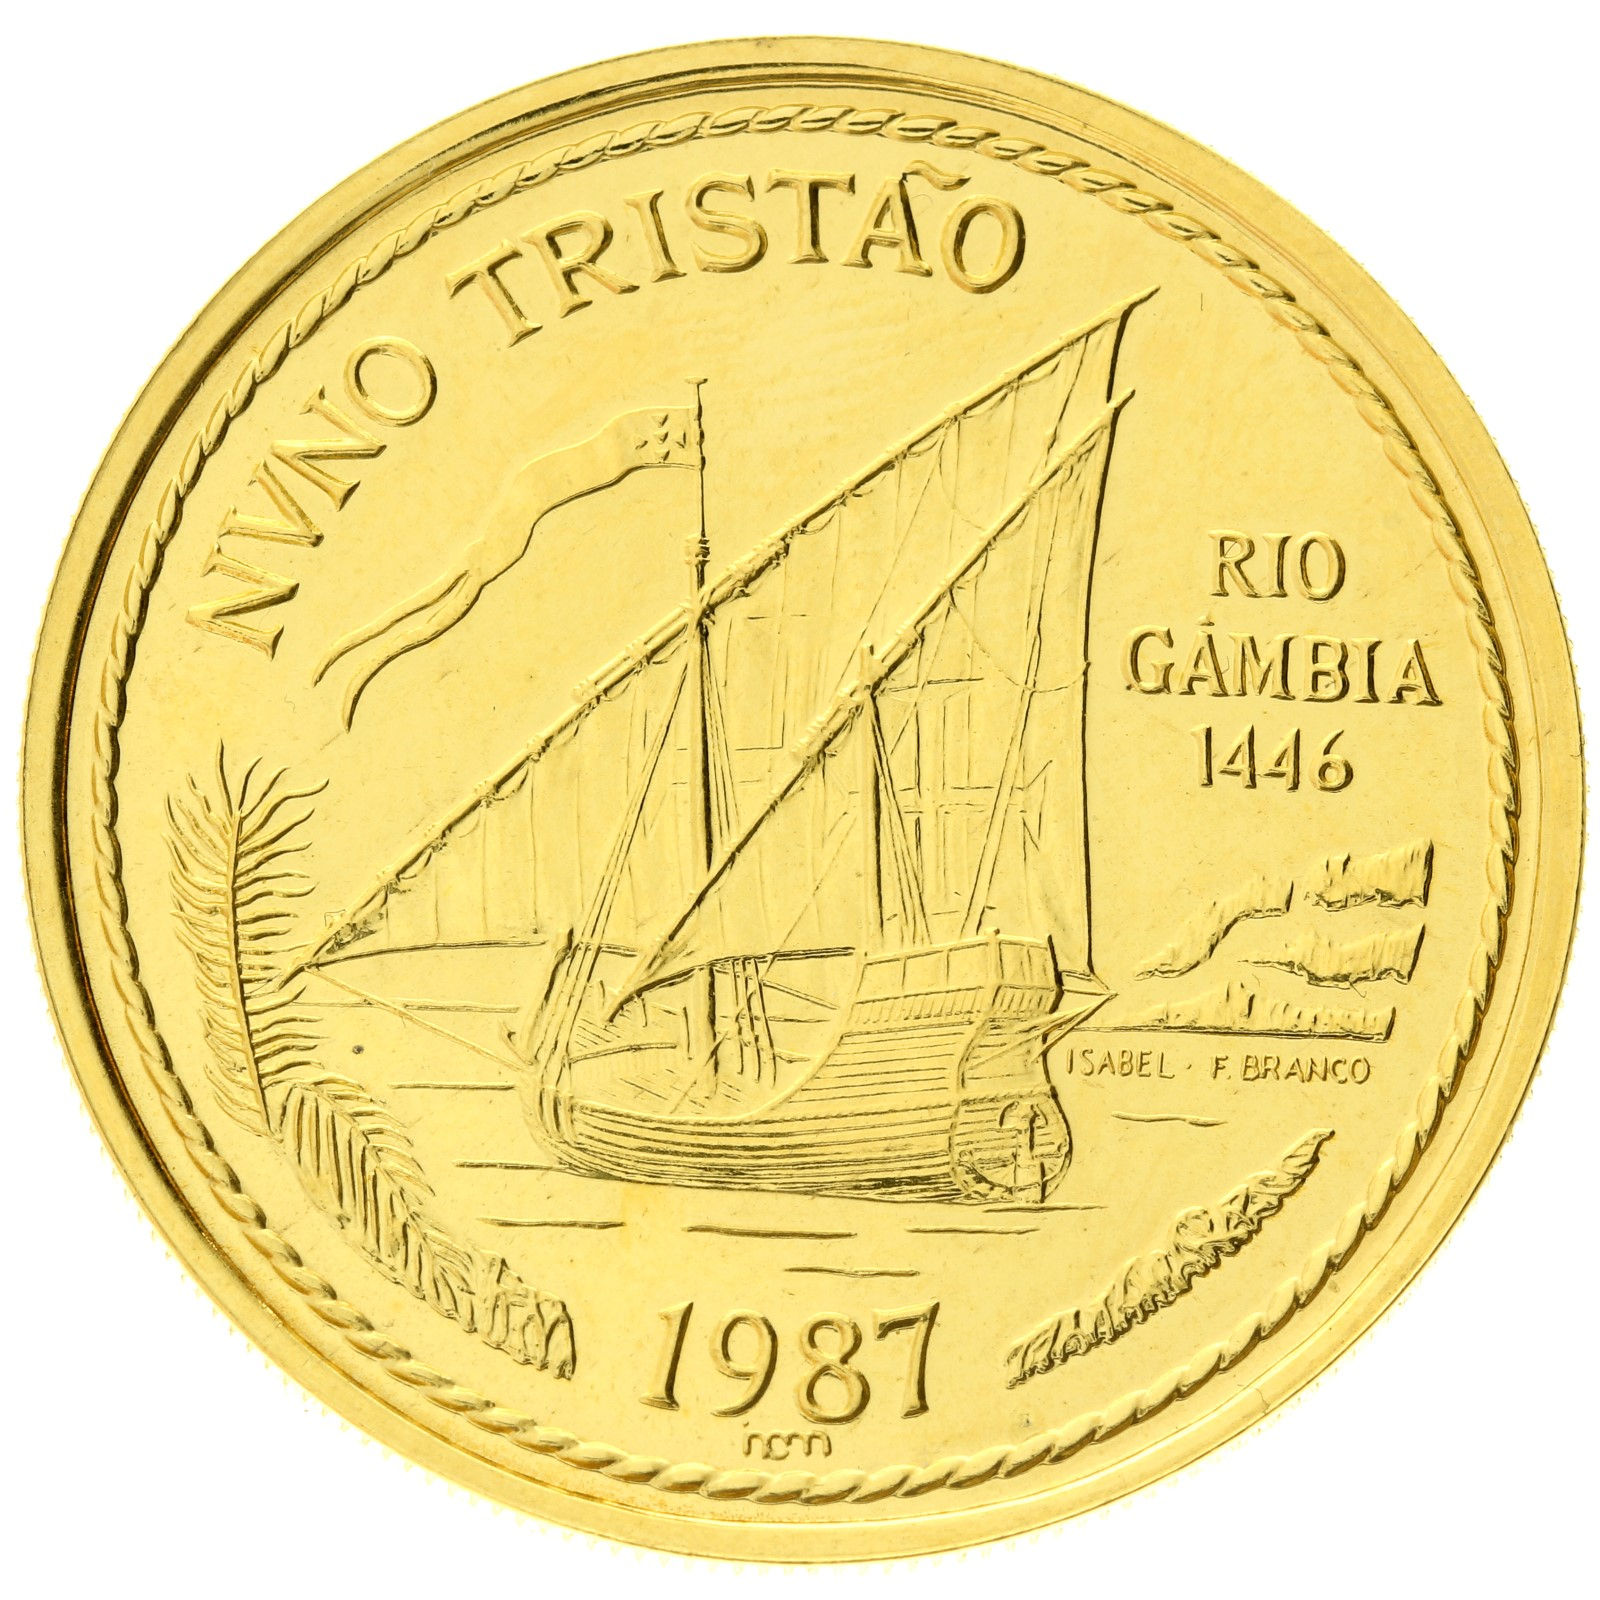 Portugal - 100 escudos - 1987 - Nuno Tristão